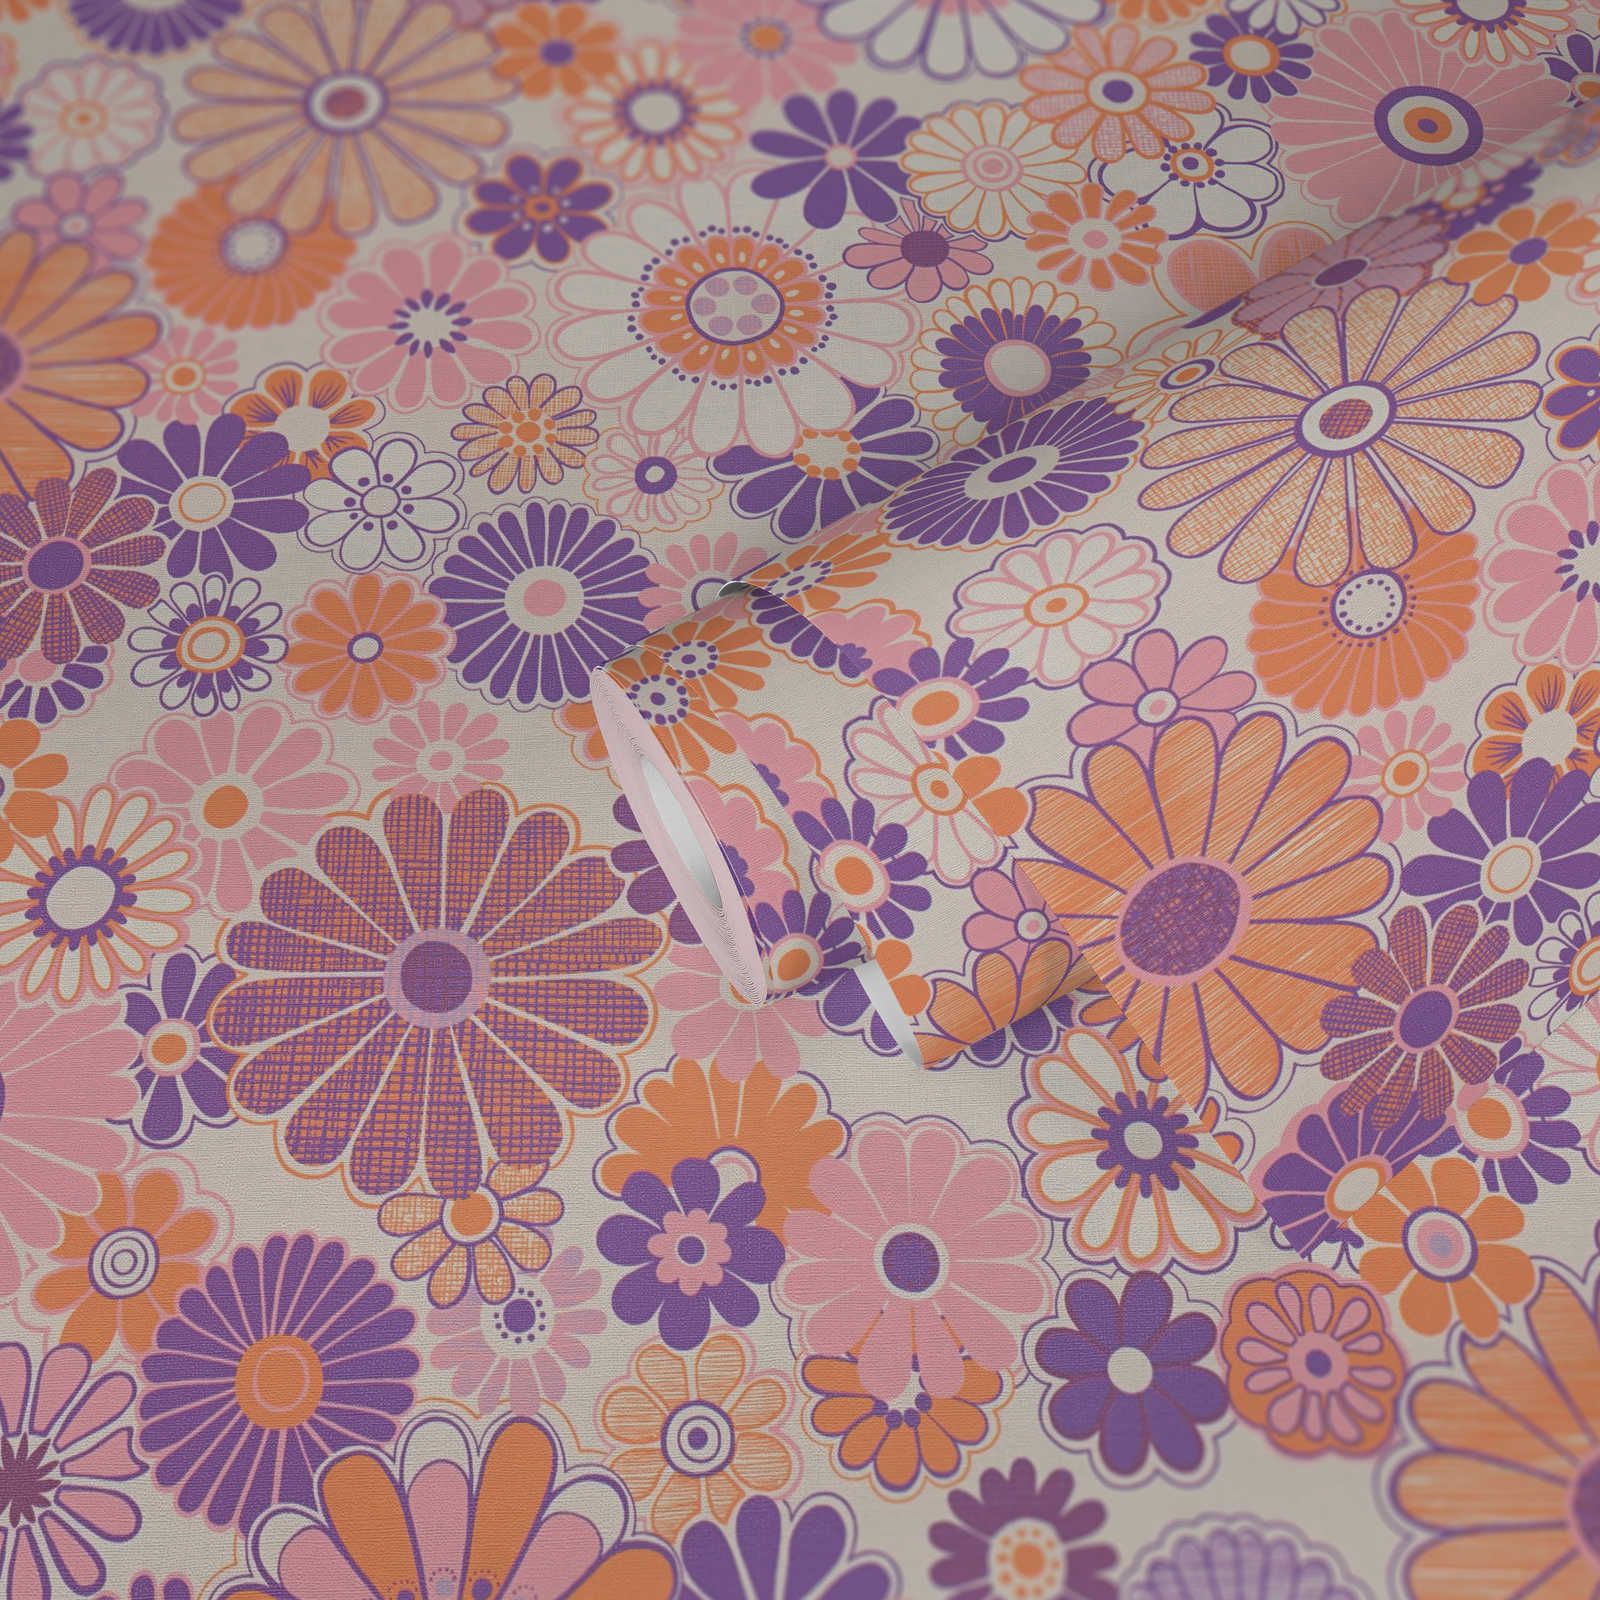             Vliesbehang met lichte structuur en bloemenpatroon - paars, oranje, roze
        